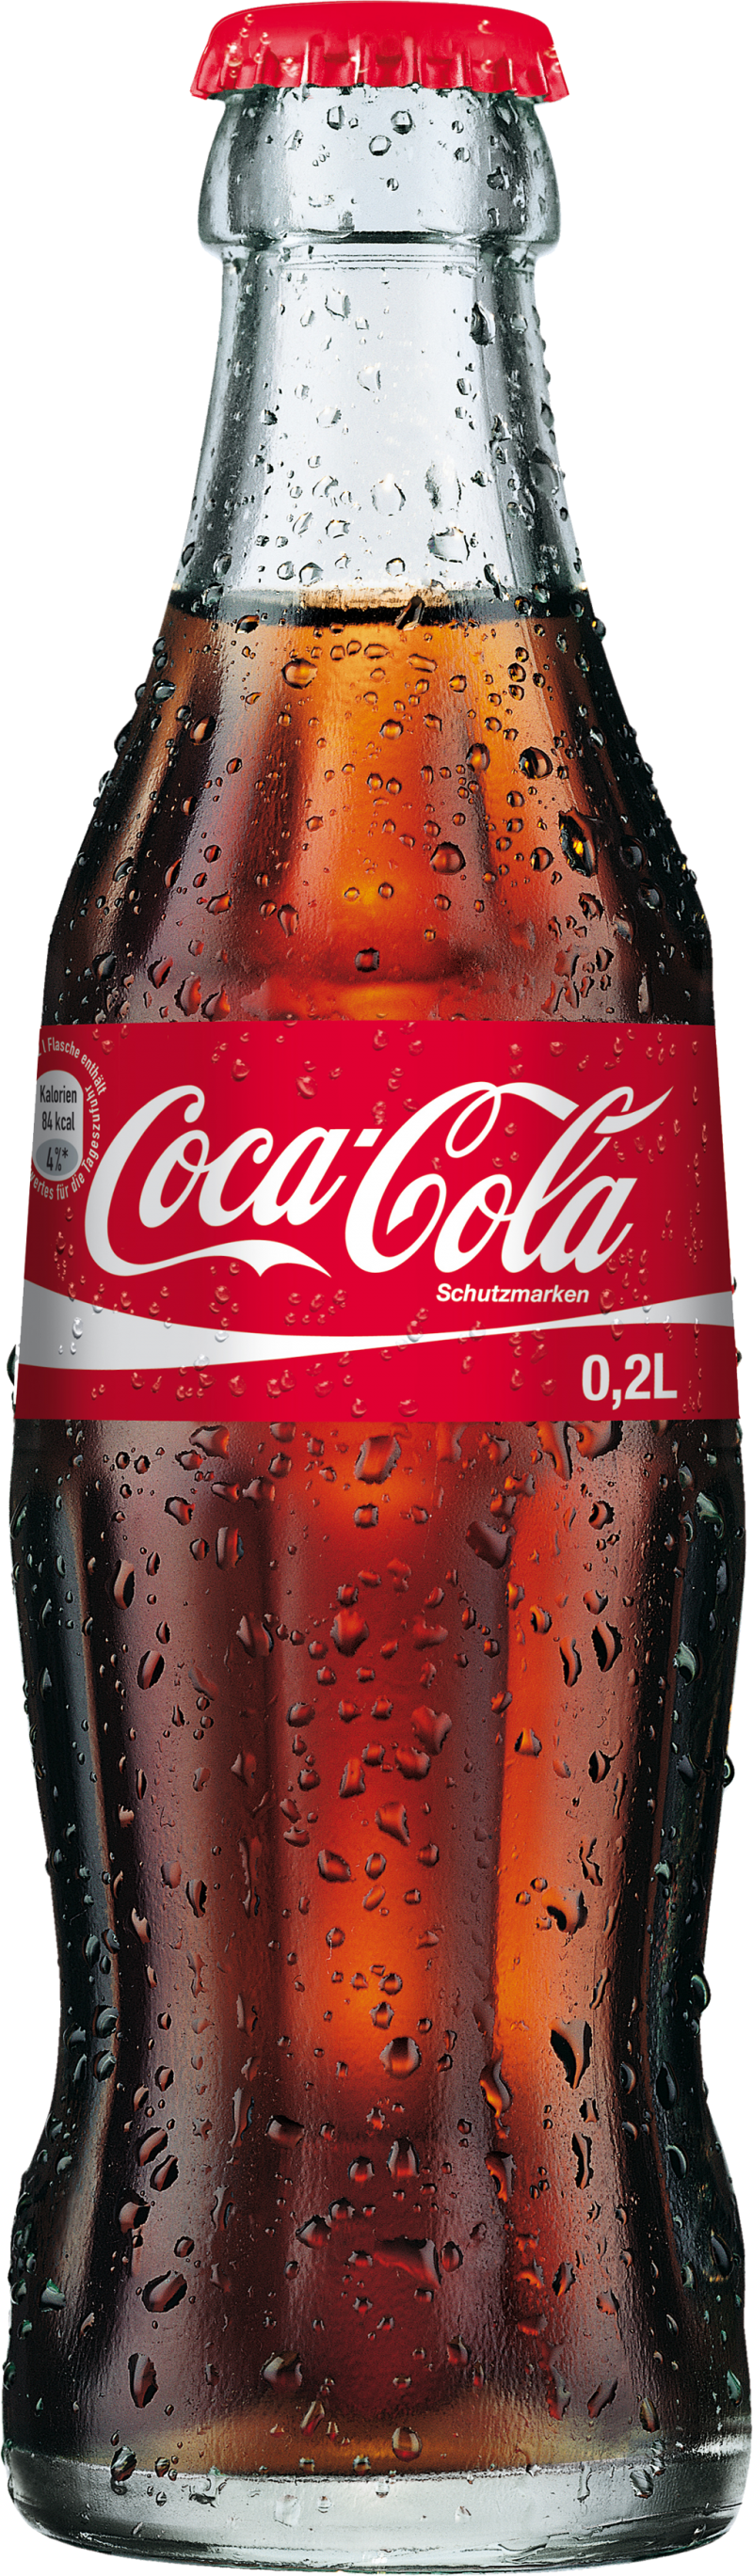 Classic Coca Cola Bottle Condensation0.2 L PNG image